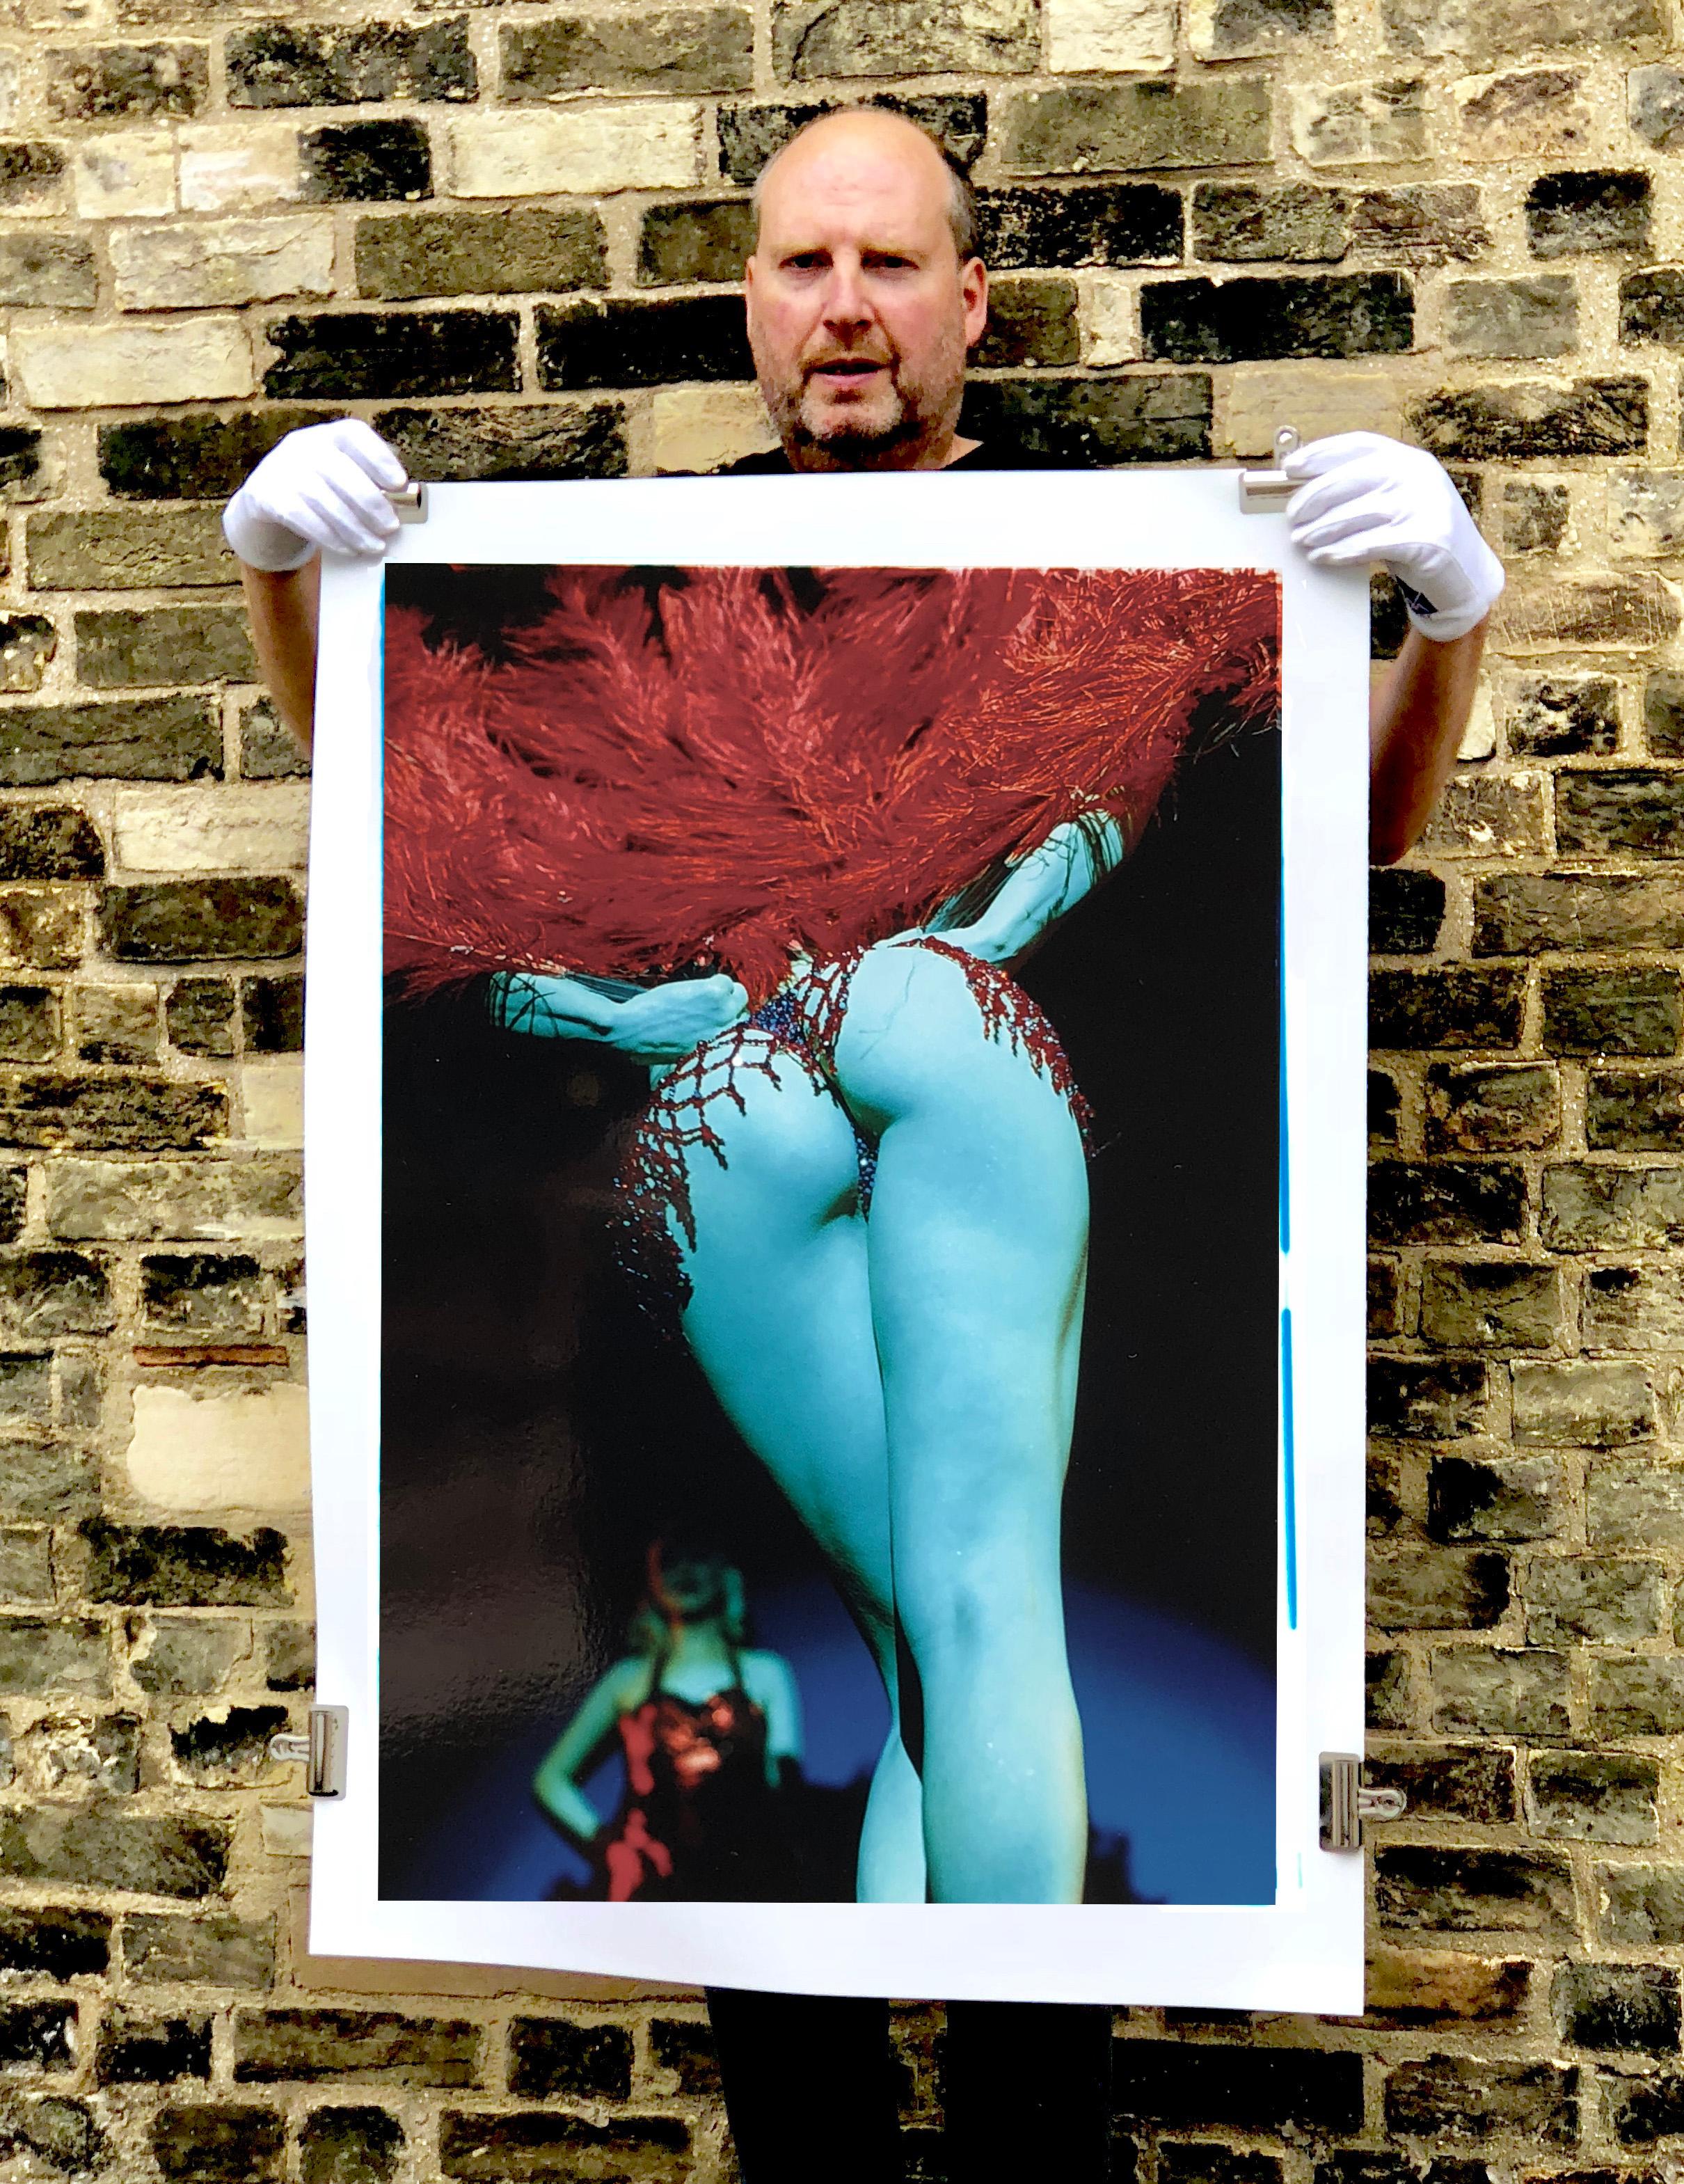 Richard Heeps wurde durch seine Burlesque-Fotografie bekannt, nachdem er 2003 Aufführungen in Großbritannien und Amerika fotografiert hatte. Bei vielen Gelegenheiten verbrachte er viel Zeit mit seinen Schützlingen und baute eine enge Beziehung zu